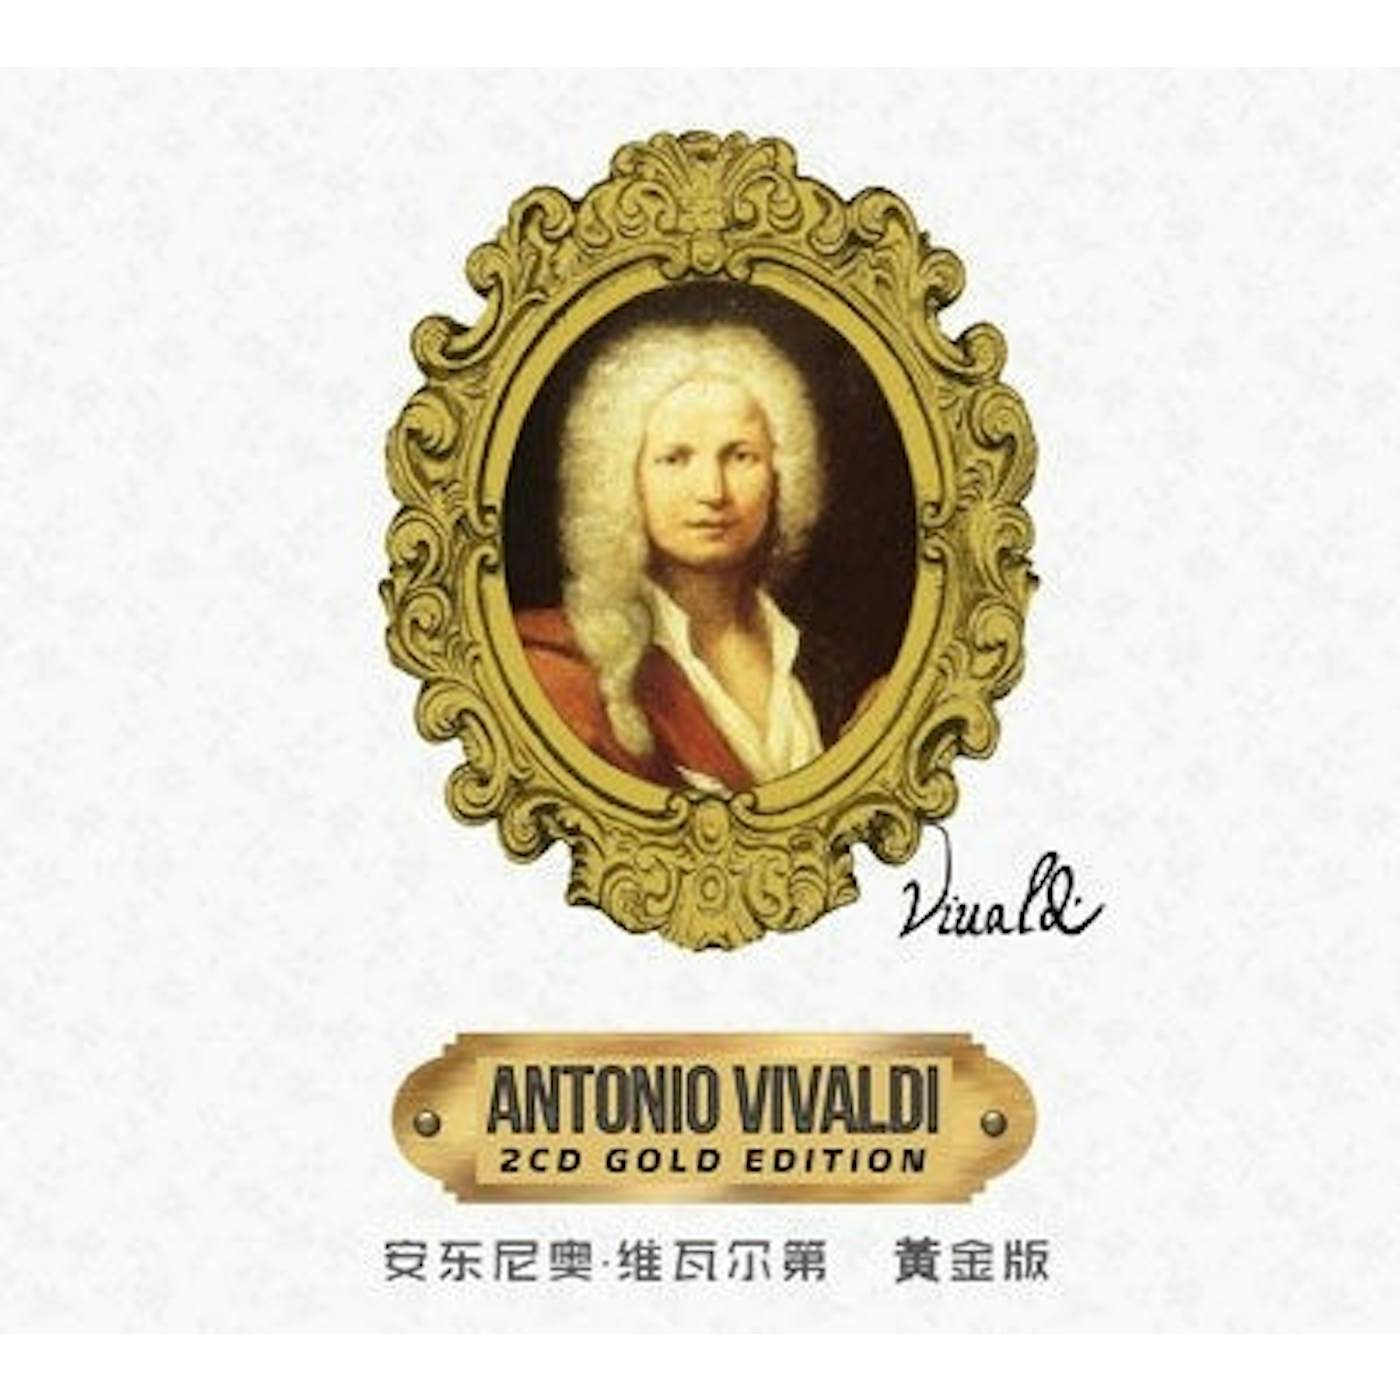 ANTONIO VIVALDI - ANTONIO VIVALDI (DOUBLE CD)